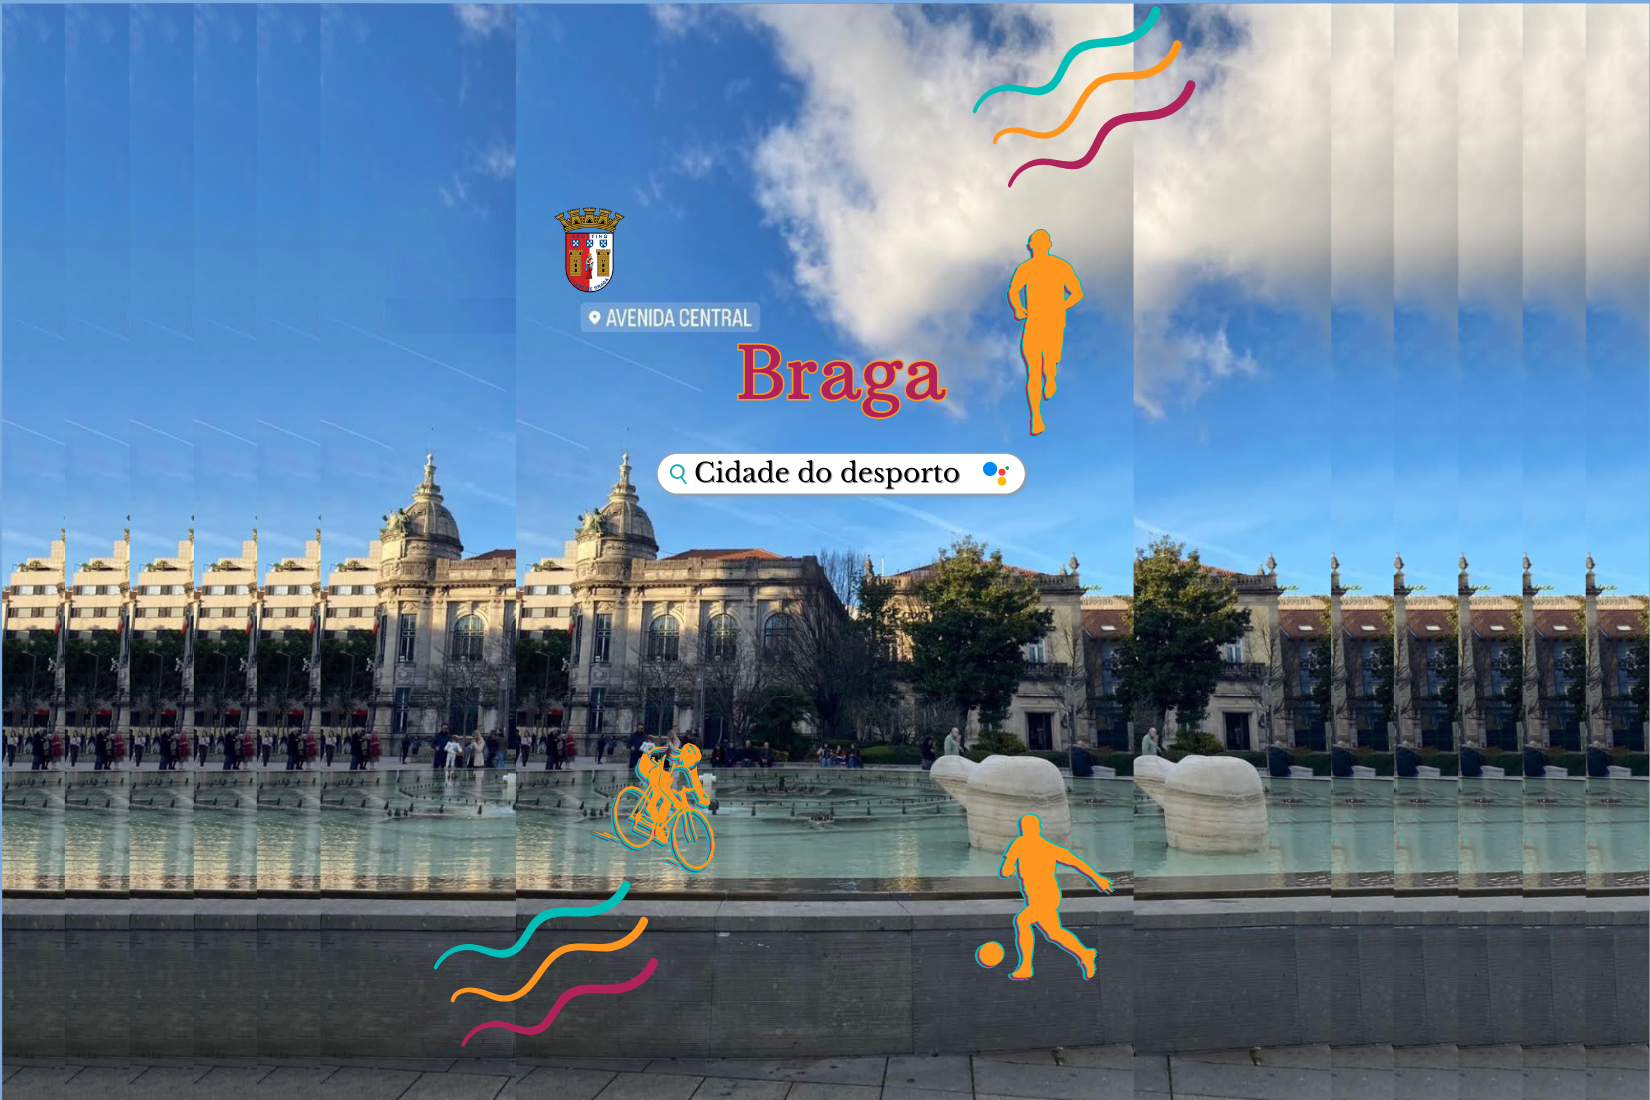 Braga e o Desporto: Uma Ligação de Paixão e Tradição